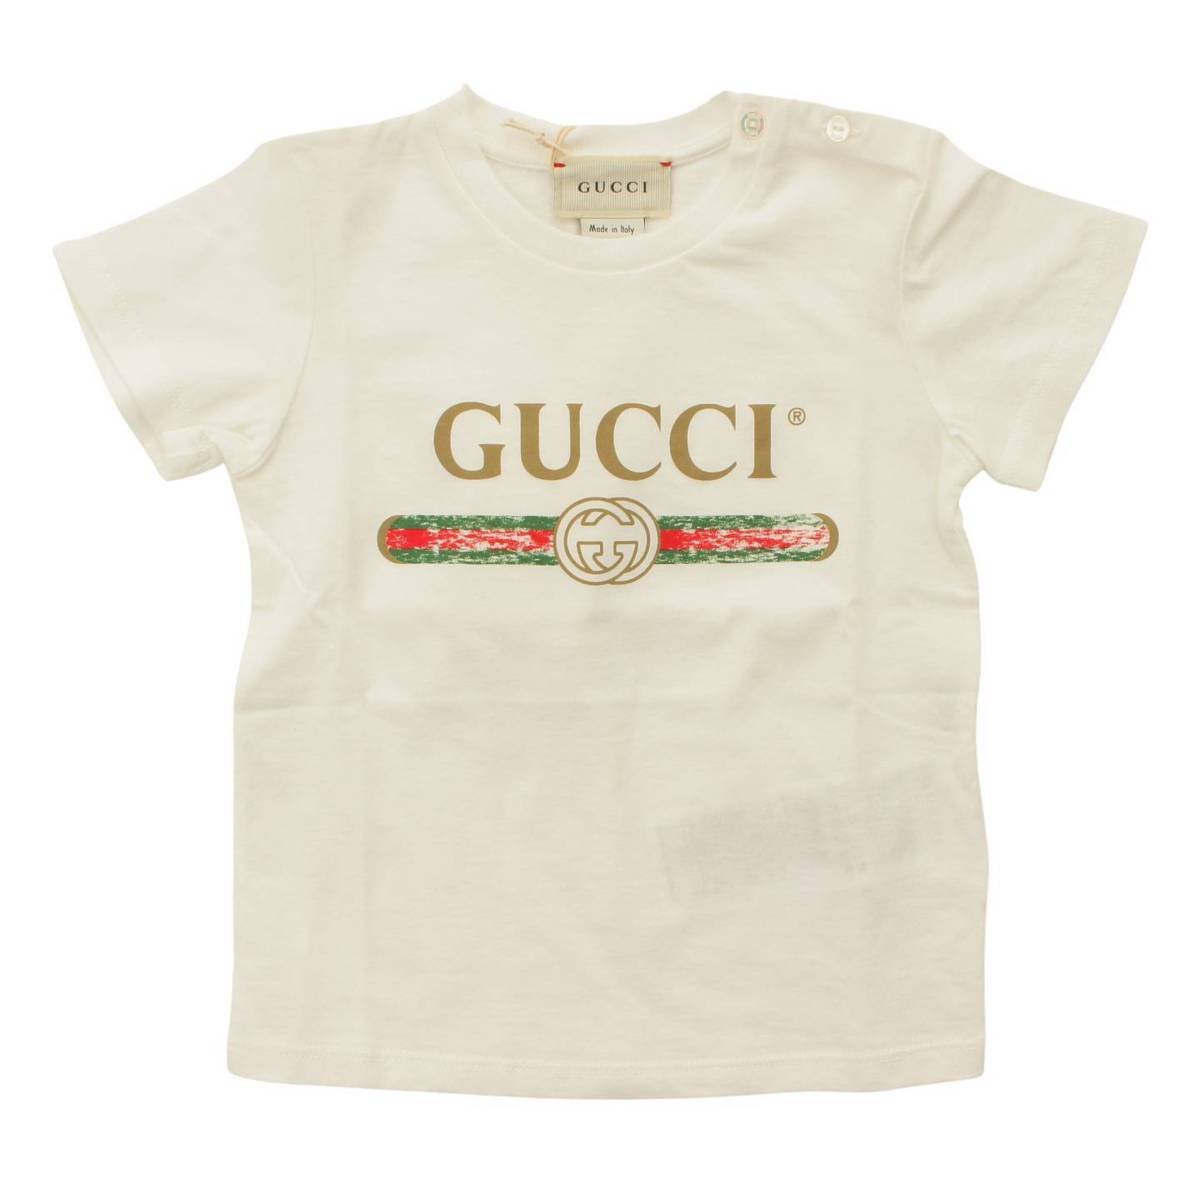 グッチ(Gucci) Tシャツ クラシックロゴ トップス ベビー服 504121 X3L64 ホワイト 12/18